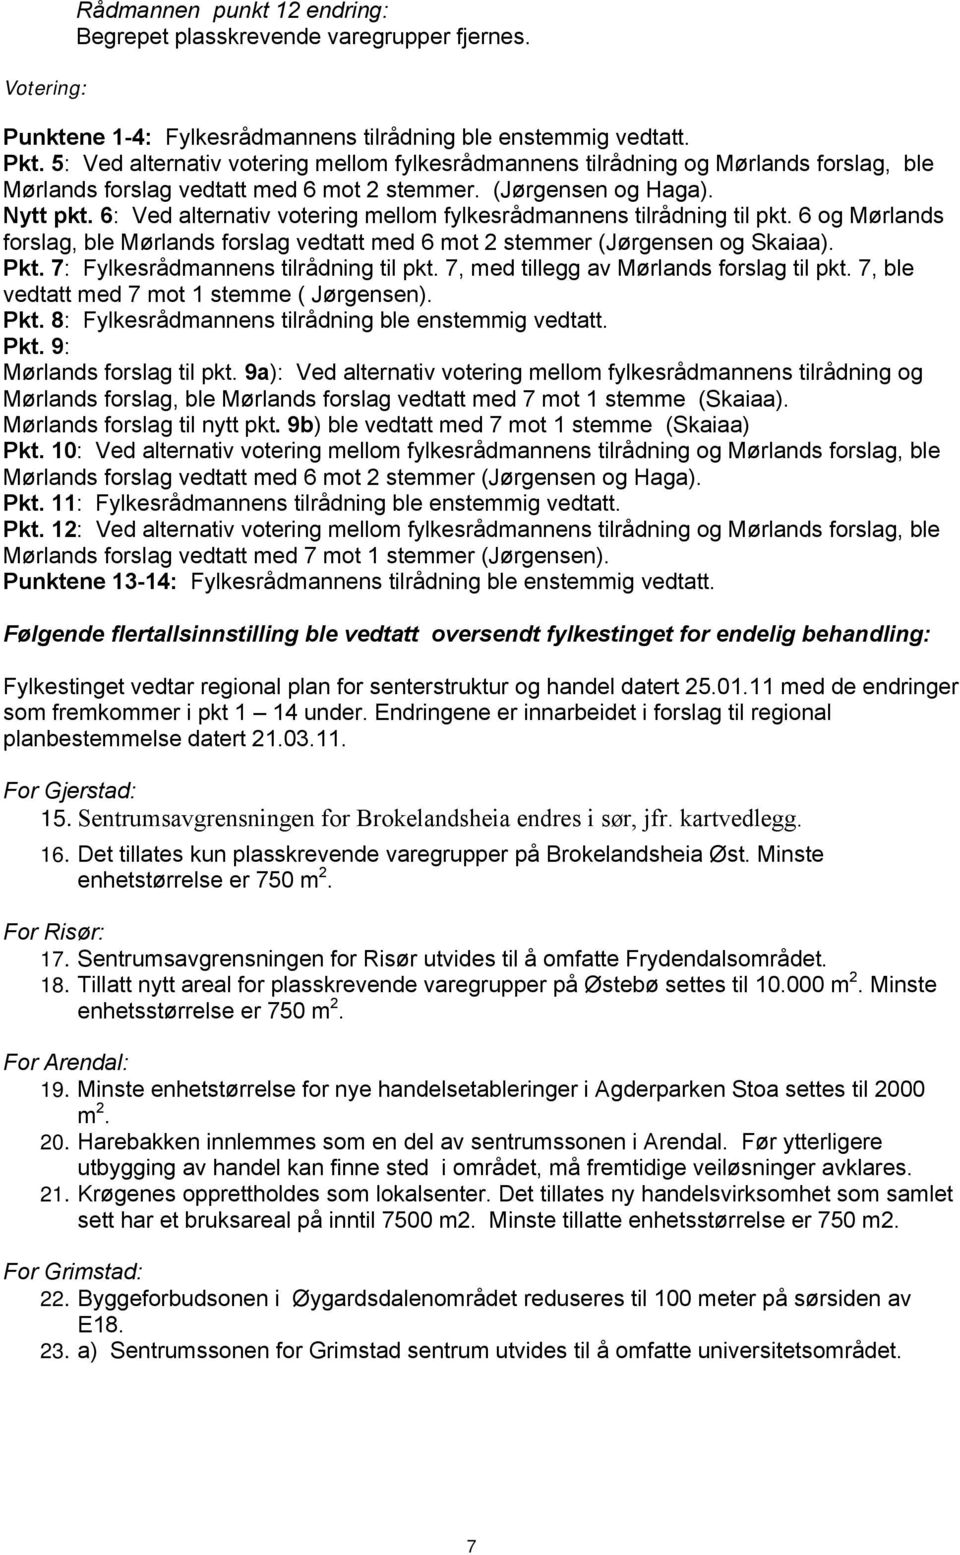 6: Ved alternativ votering mellom fylkesrådmannens tilrådning til pkt. 6 og Mørlands forslag, ble Mørlands forslag vedtatt med 6 mot 2 stemmer (Jørgensen og Skaiaa). Pkt.